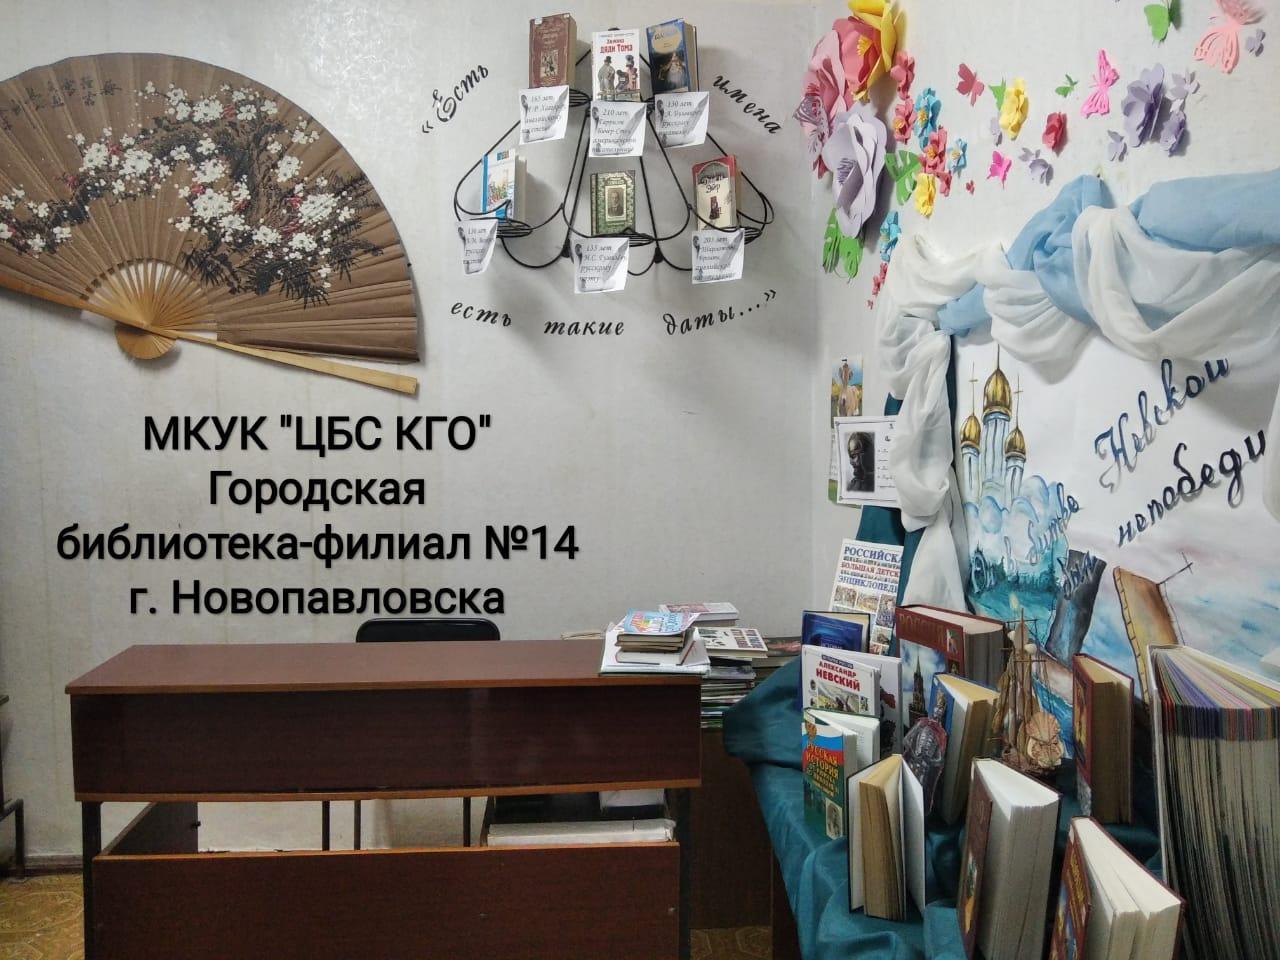 Городская библиотека-филиал № 14 Новопавловска